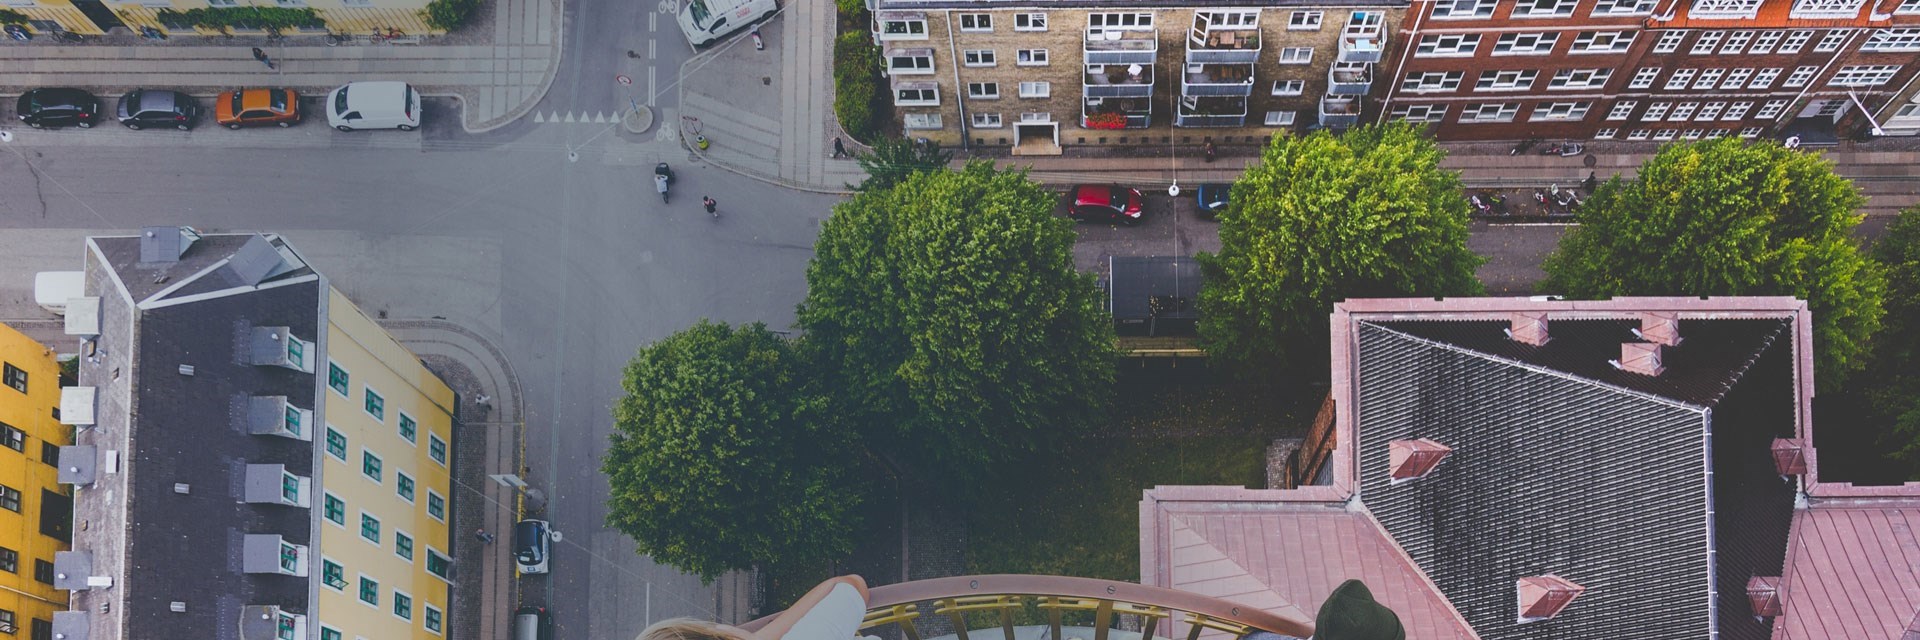 Luftfoto af fire boligblokke og et vejrkryds. På billedet er der træer, og personer der krydser vejen.